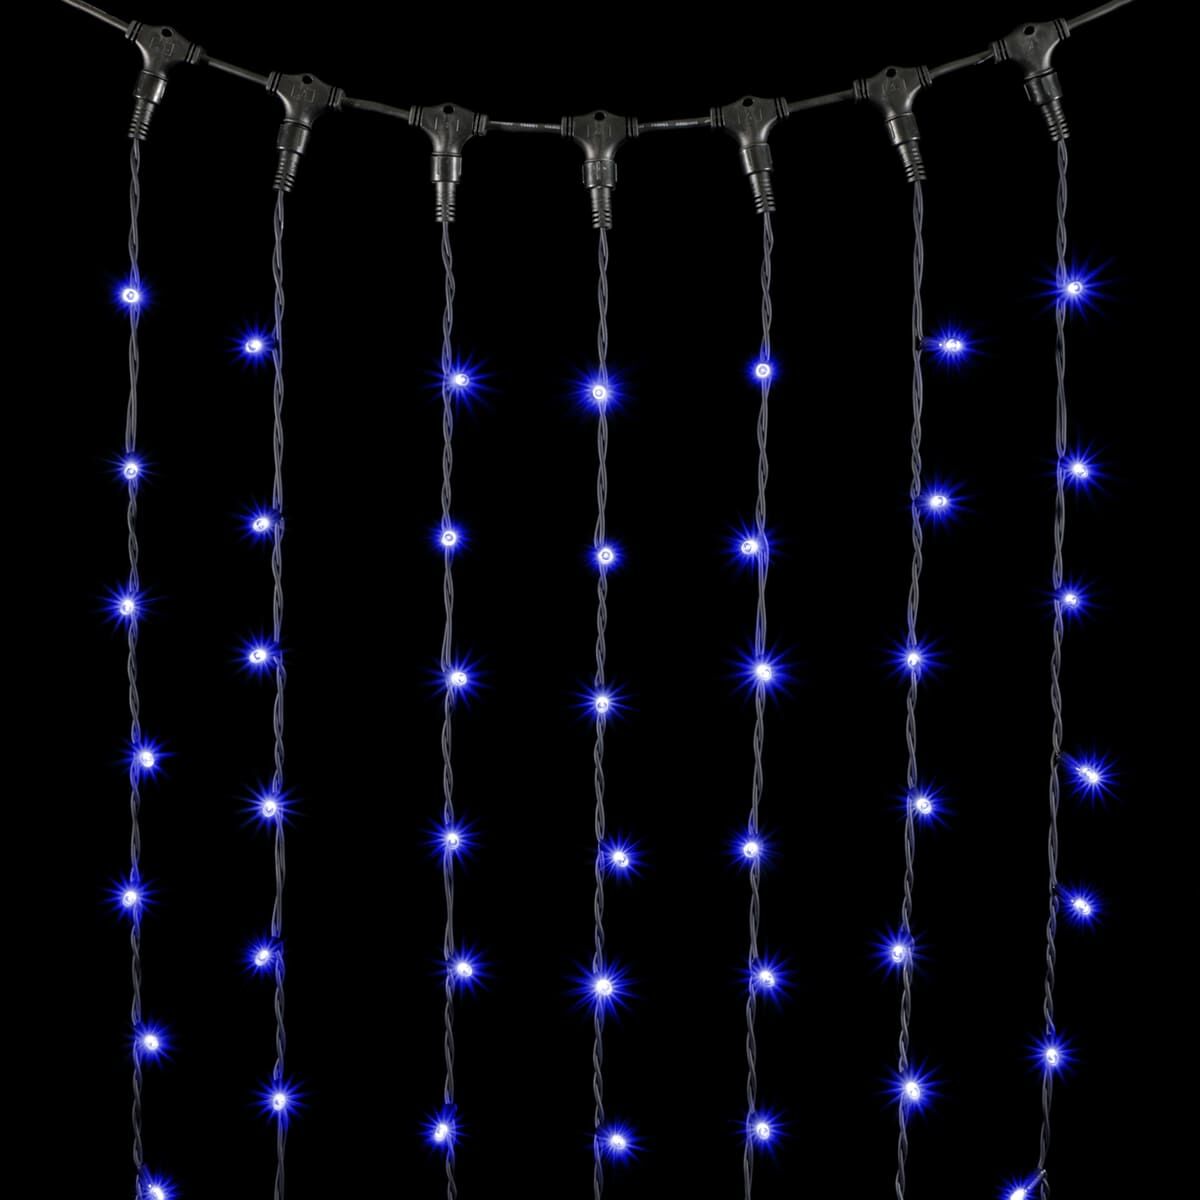 04-028 Гирлянда Занавес 2 x 3 м Синий, 600 LED, Провод Черный Каучук, IP54